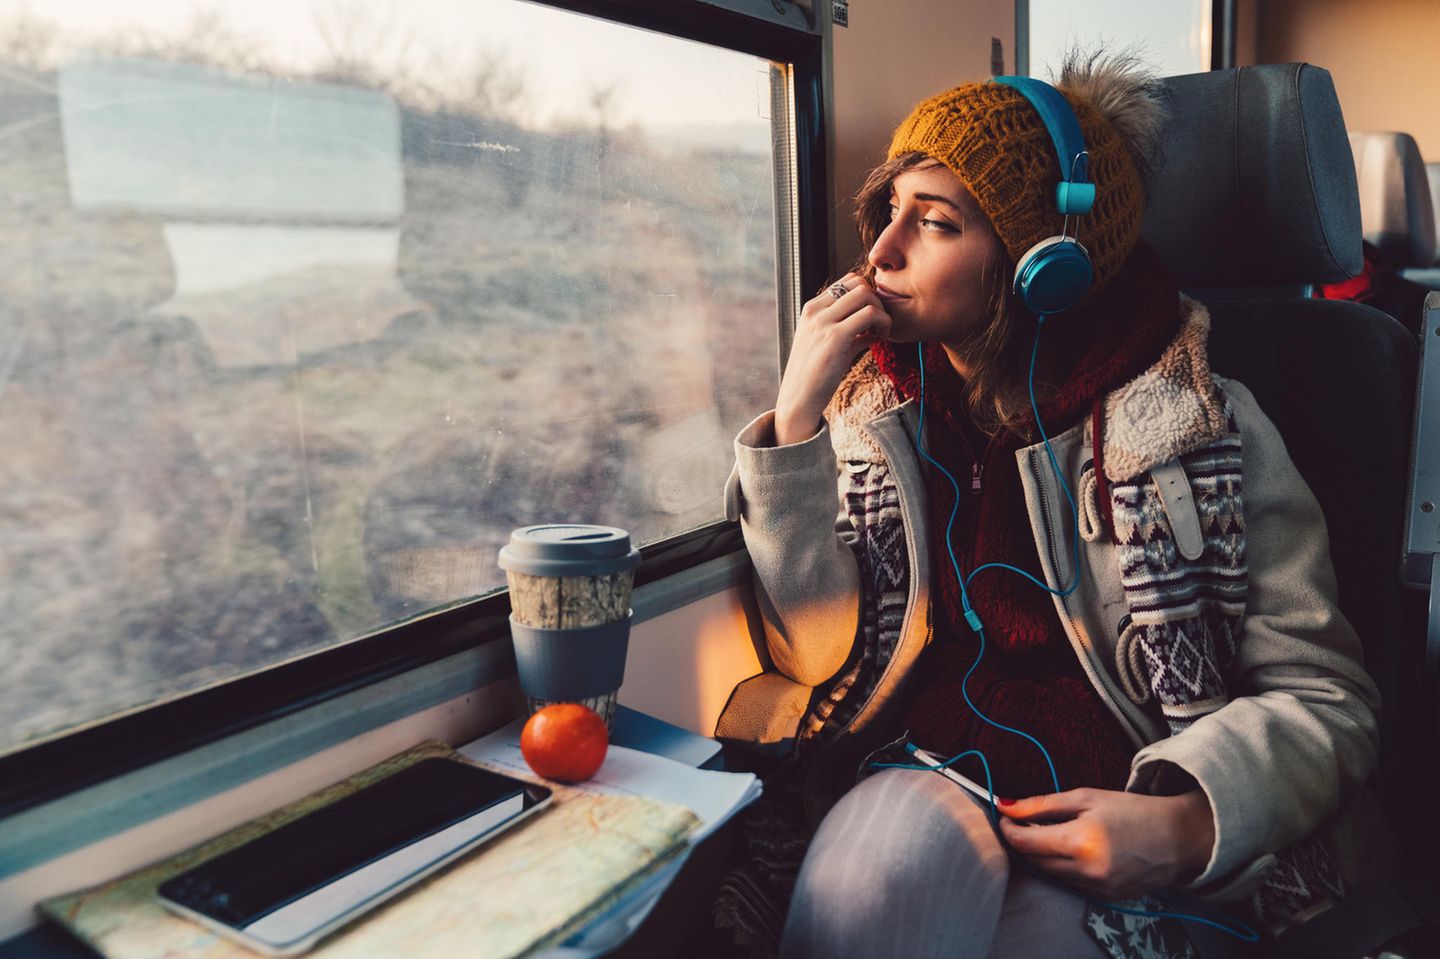 Frau sitzt in Bahn, hört Musik und schaut aus dem Fenster